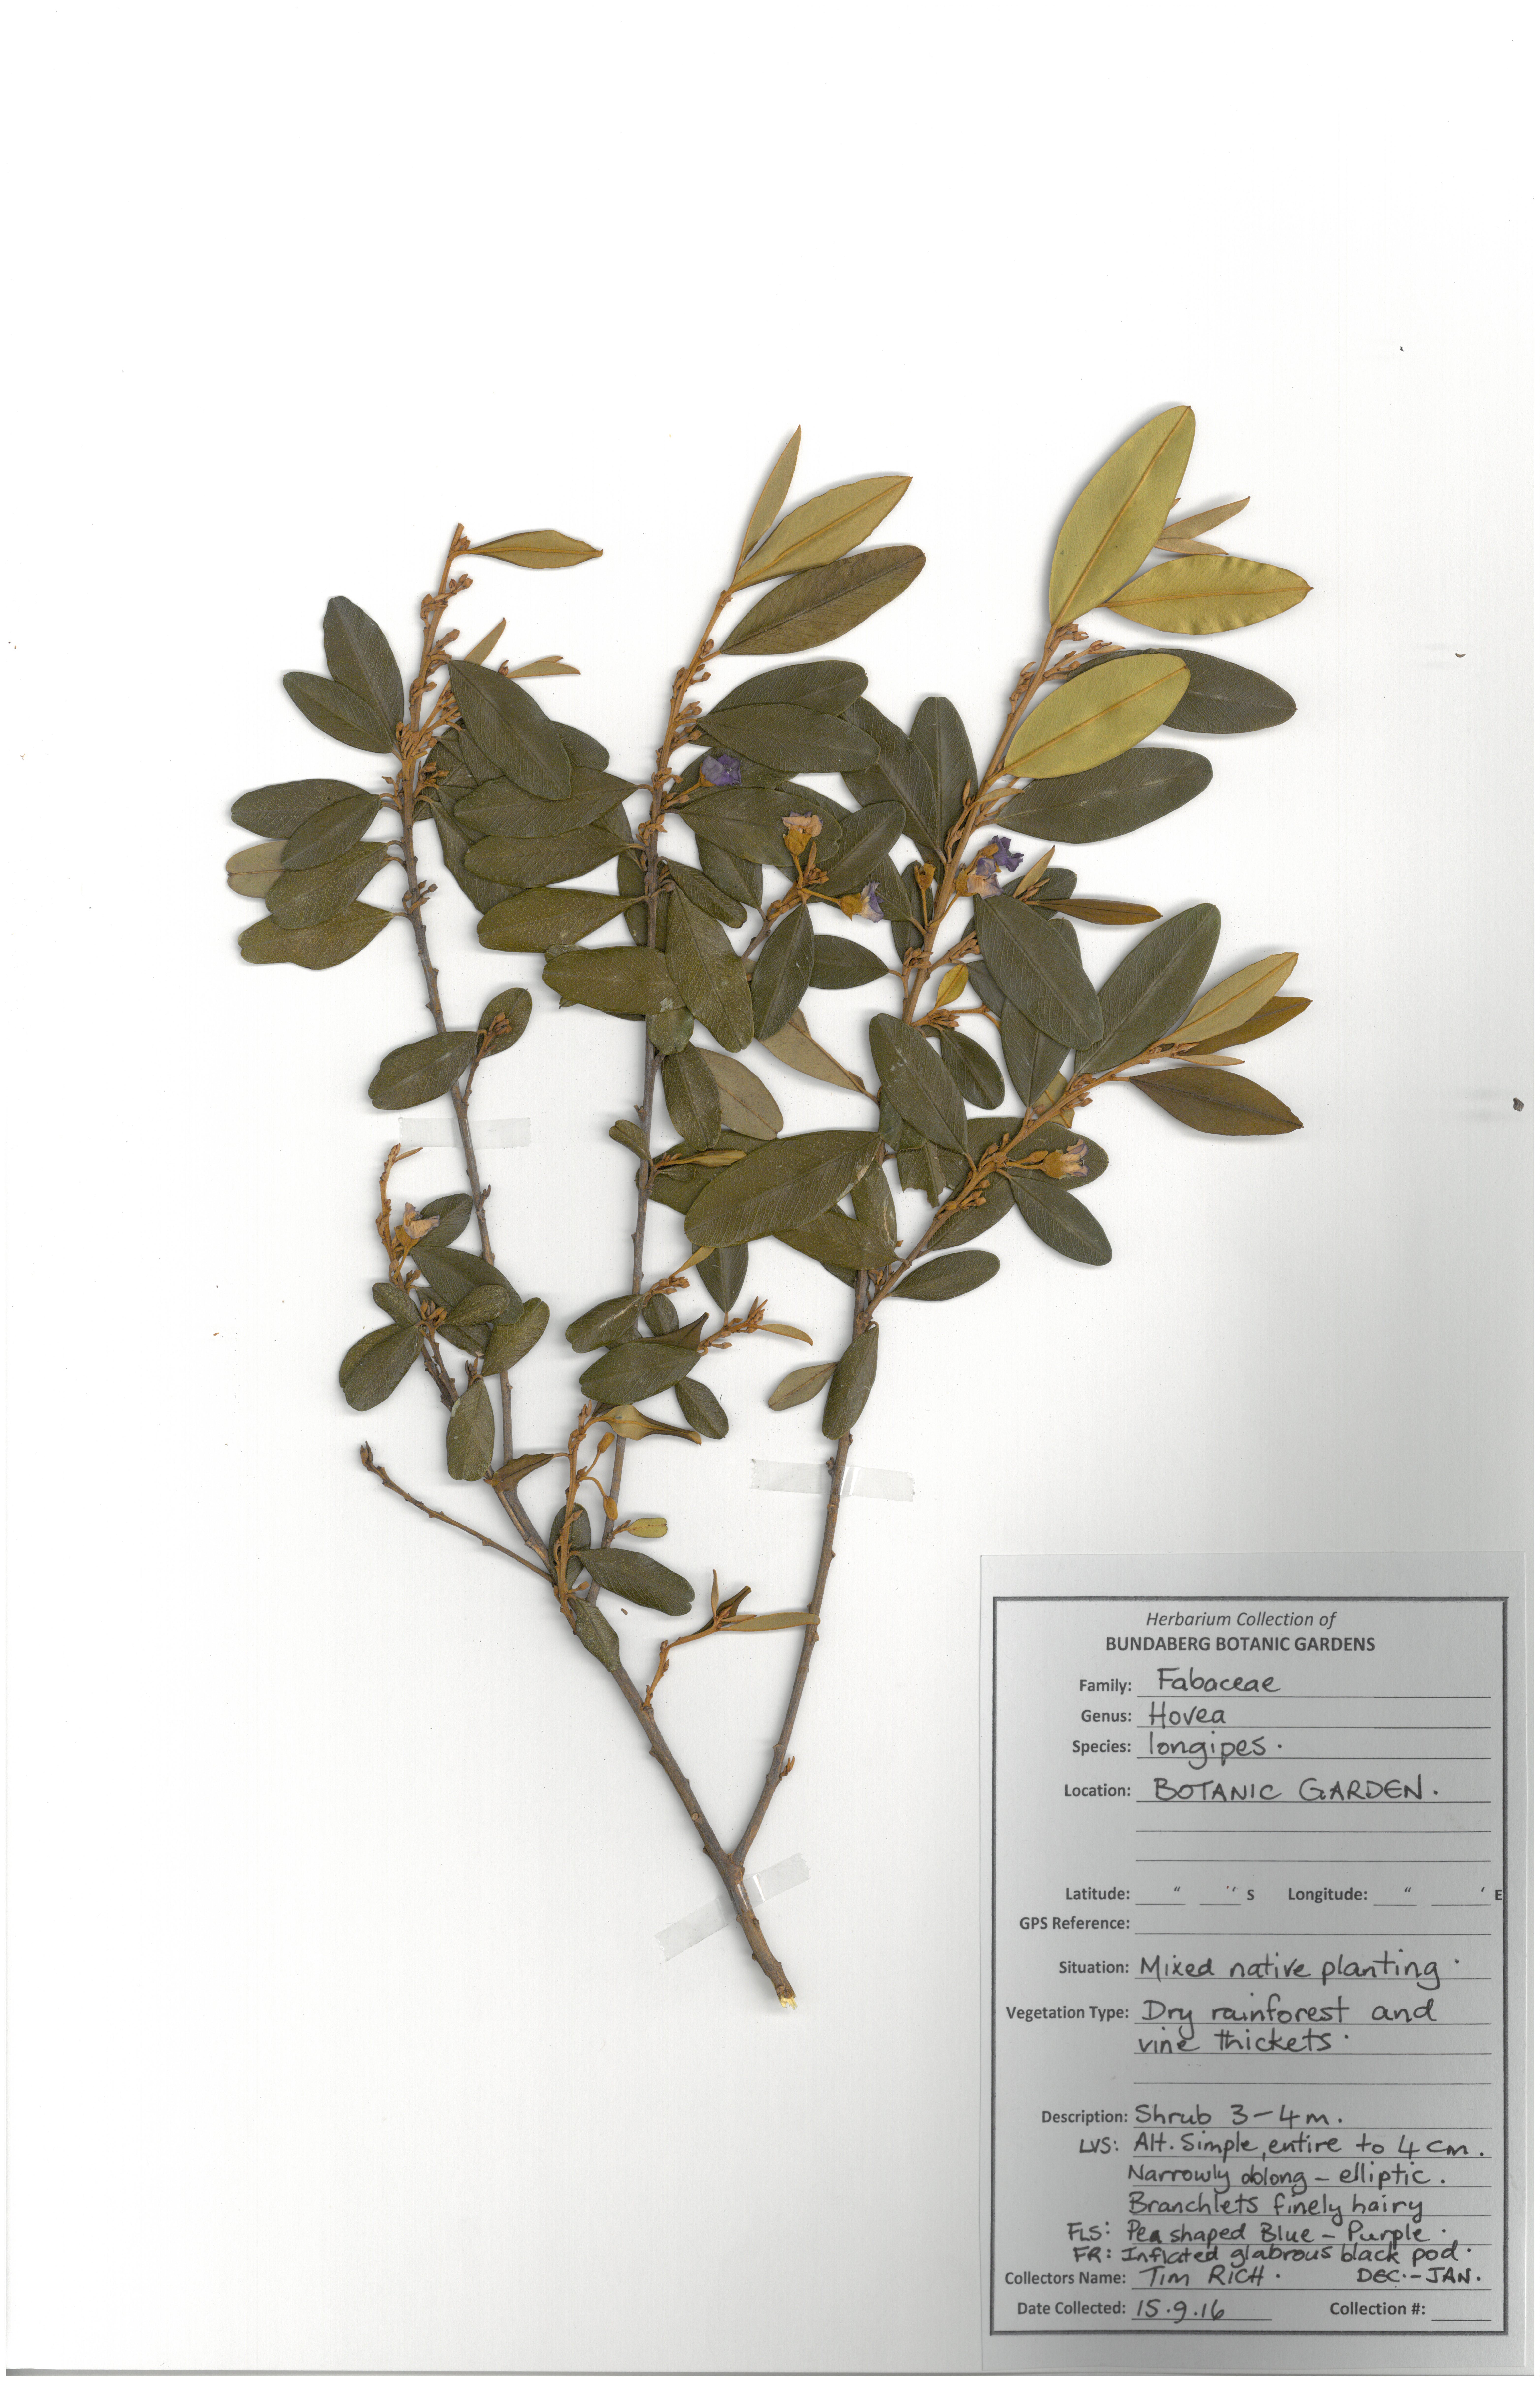 Fabaceae hovea longipes